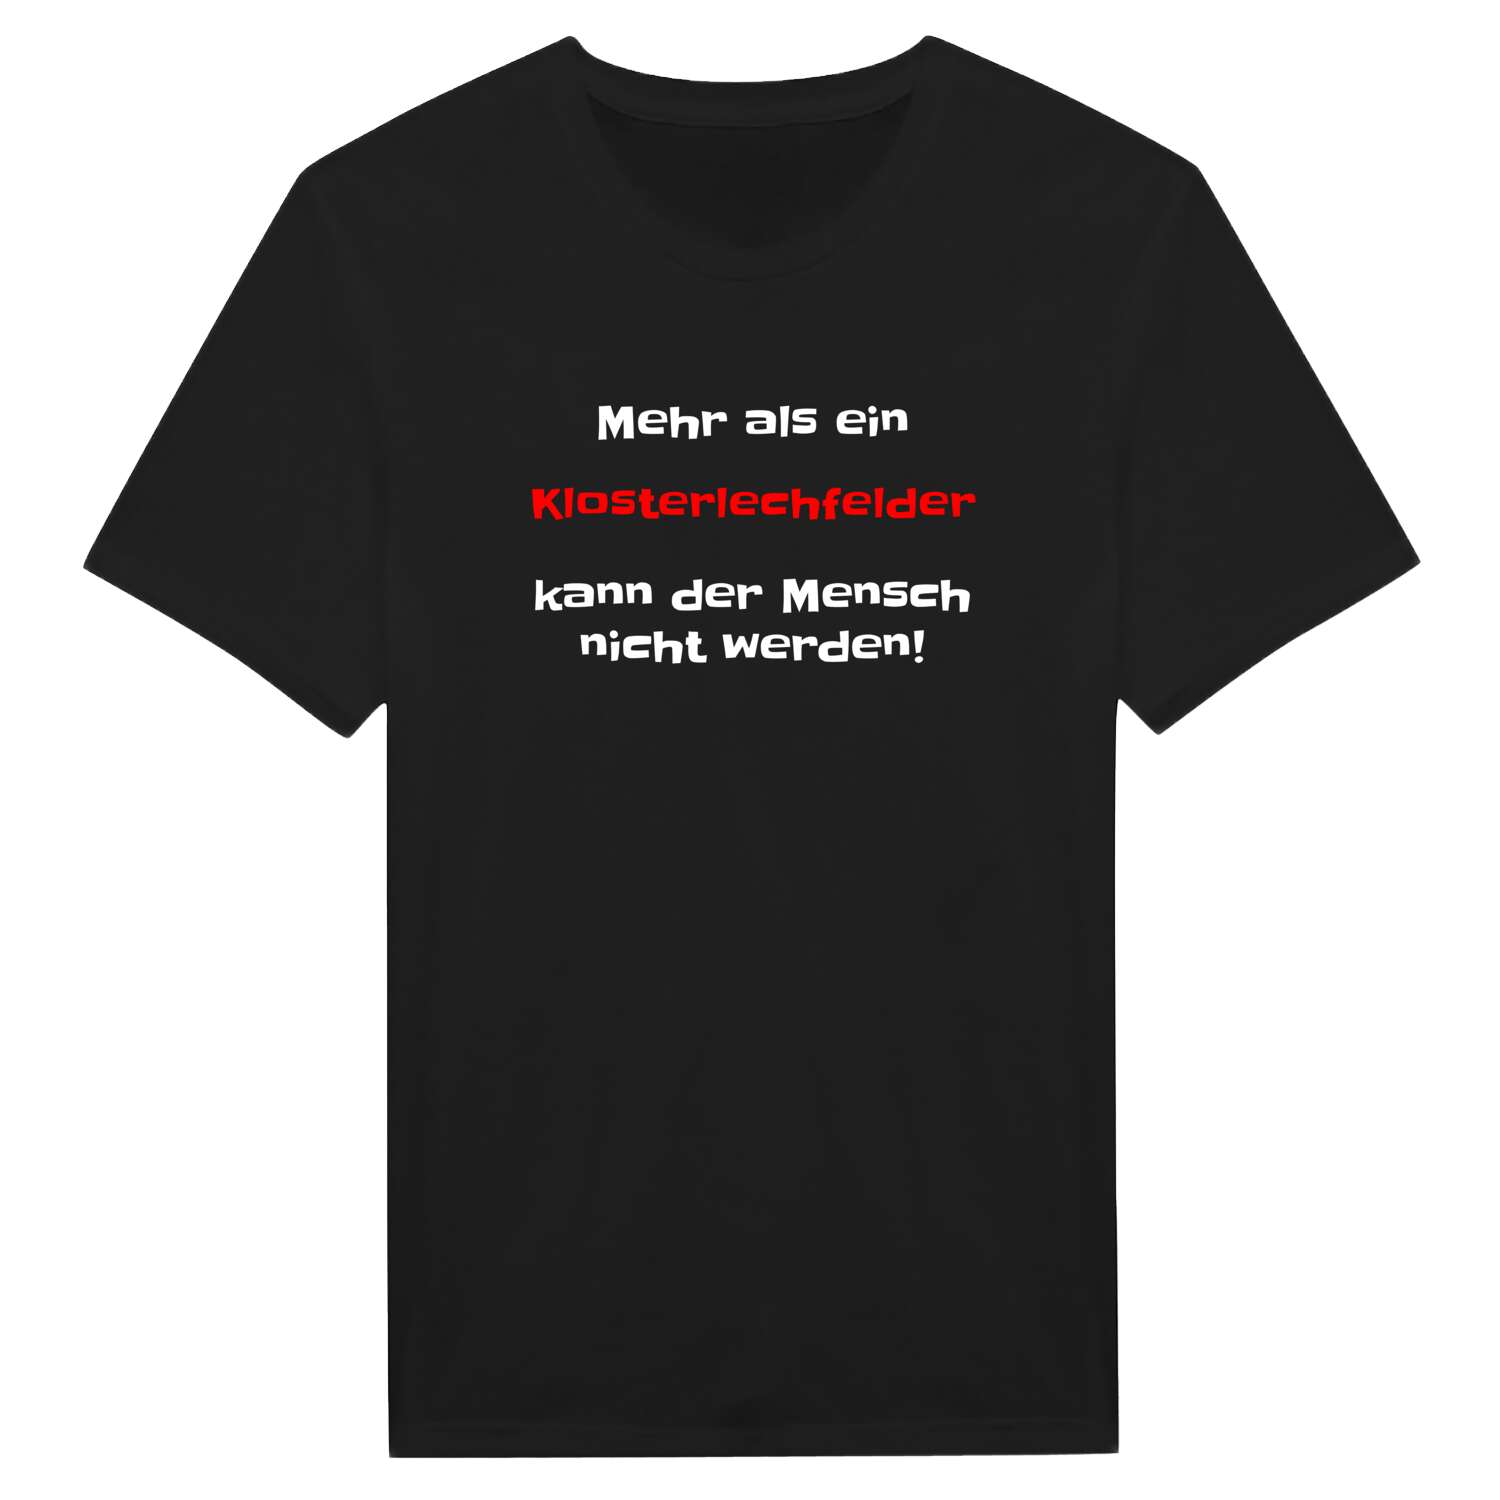 Klosterlechfeld T-Shirt »Mehr als ein«